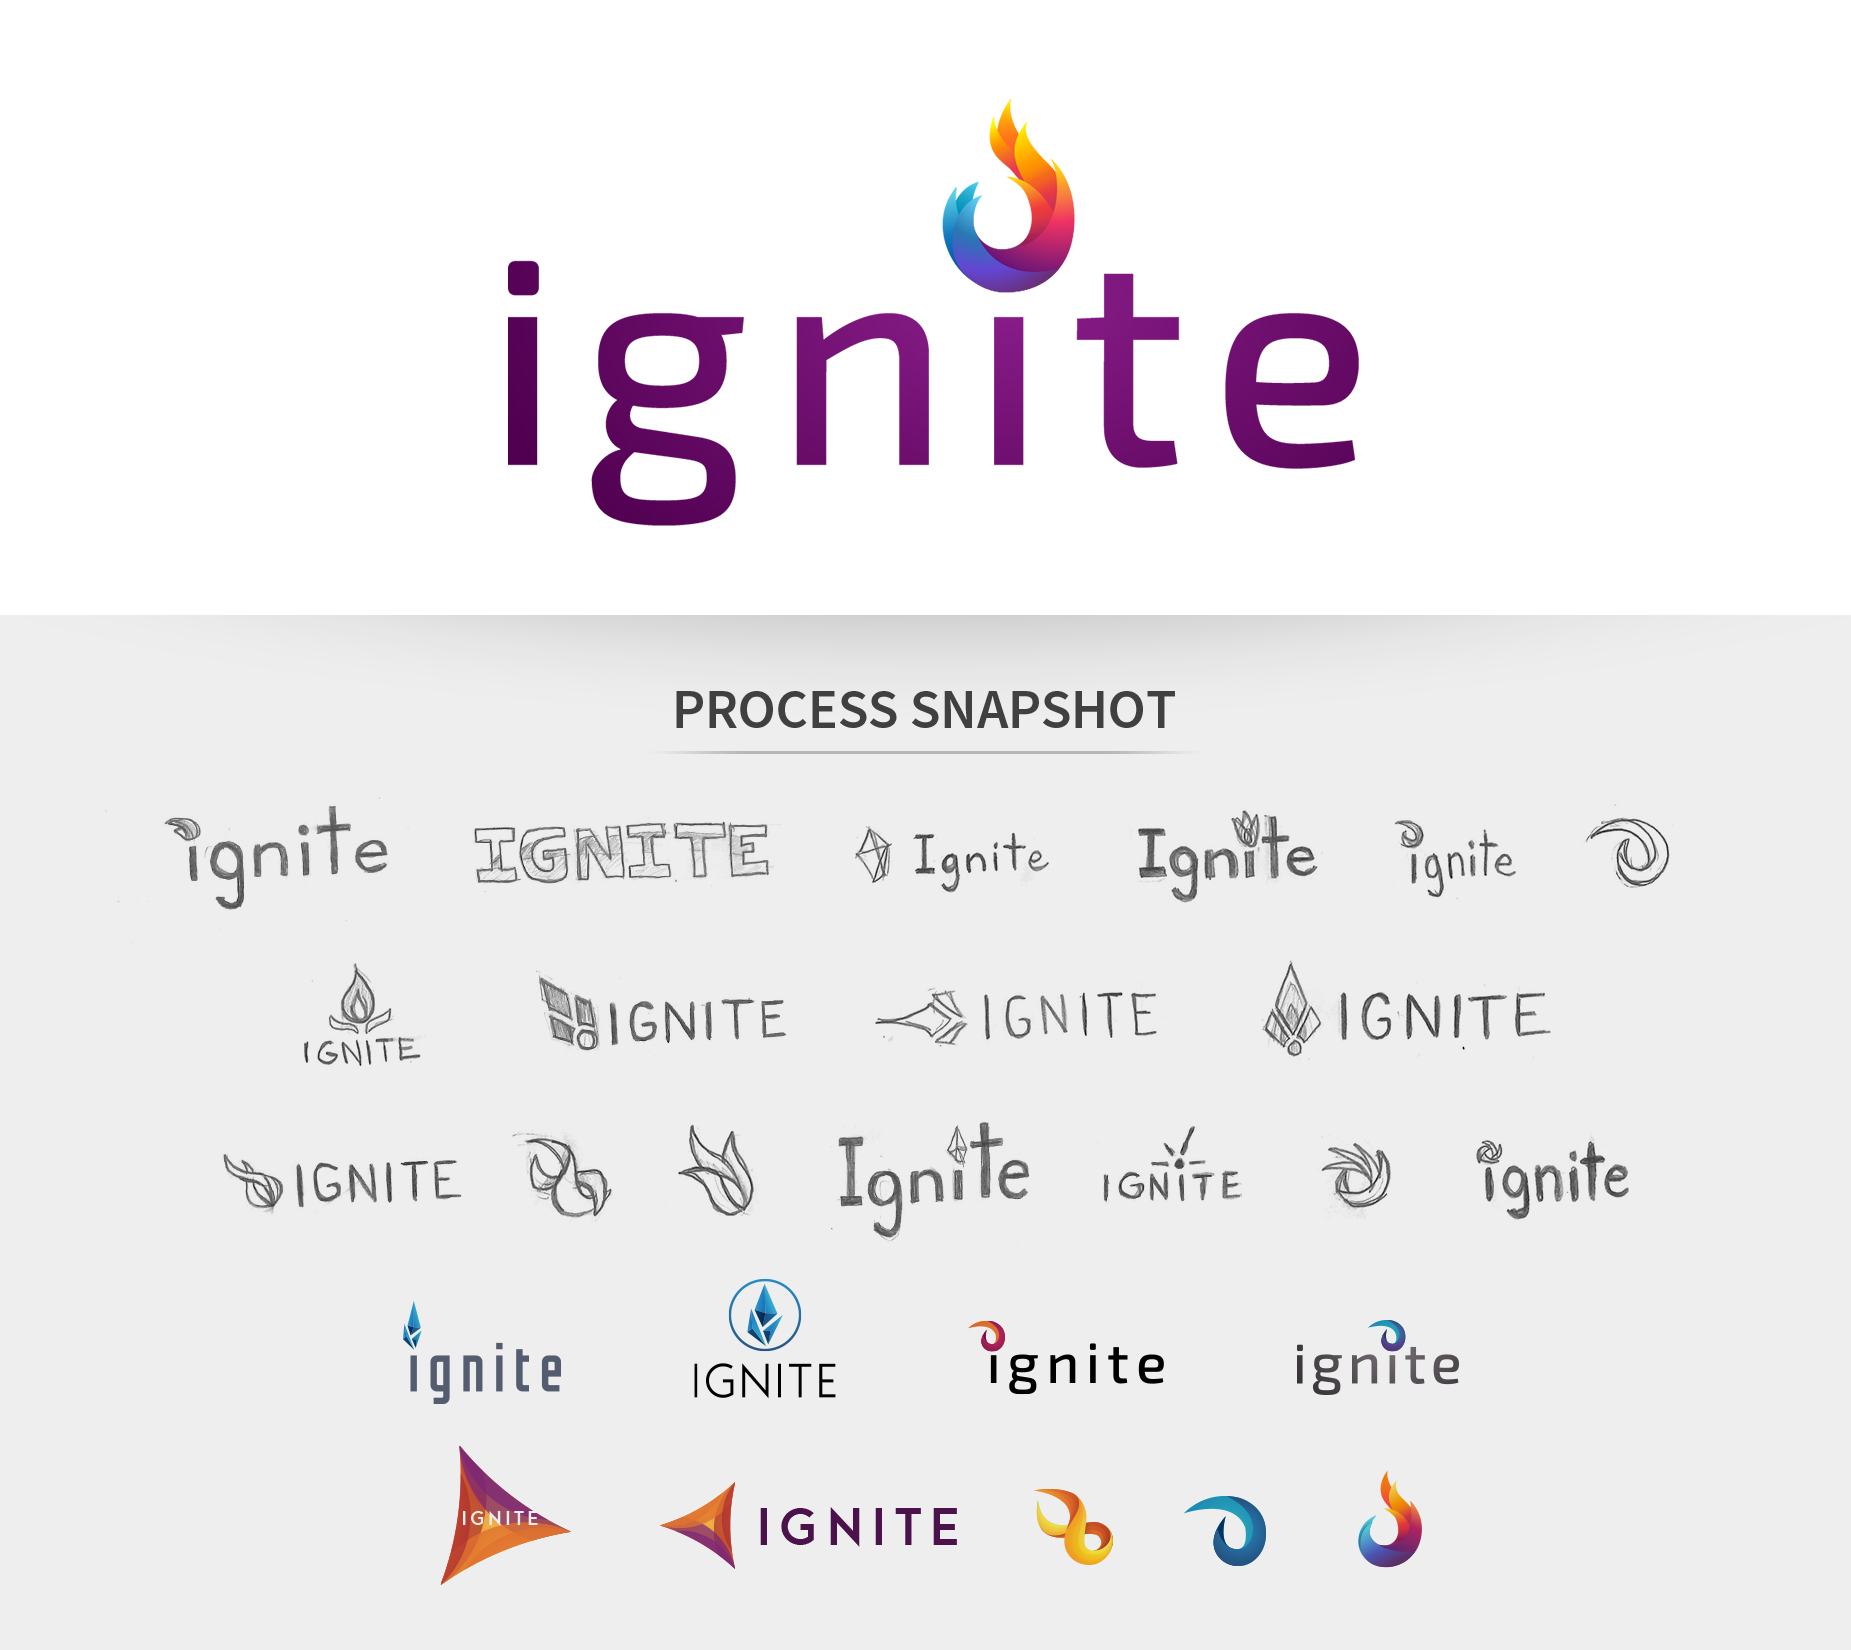 Ignite logo branding and process snapshot